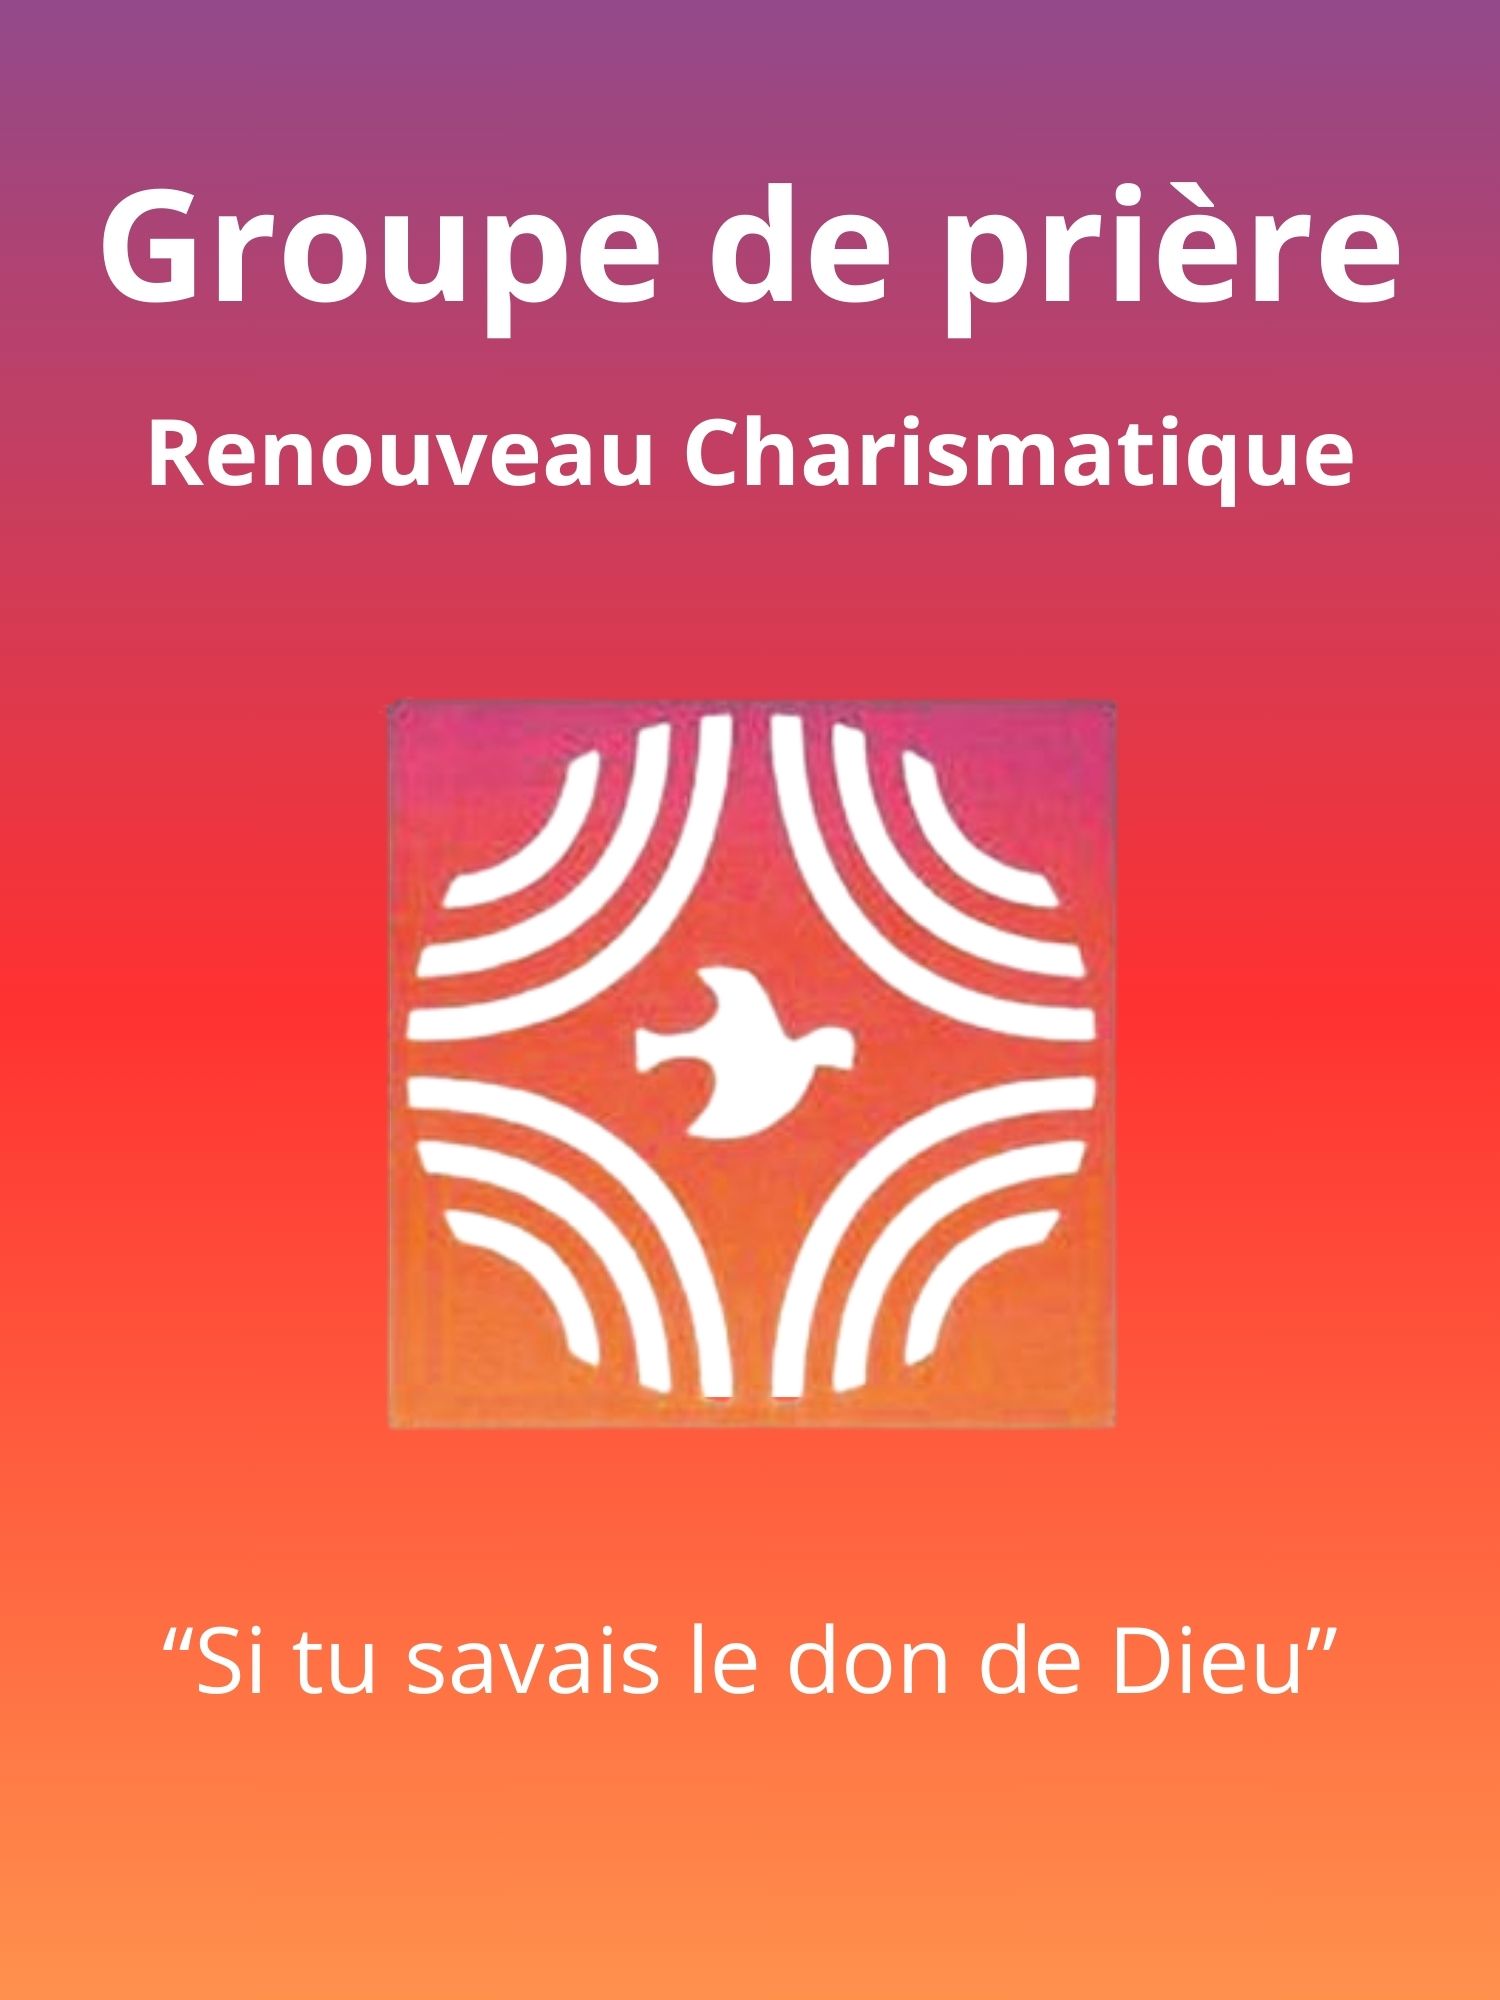 Groupe renouveau charismatique - Paroisse Dinard-Pleurtuit